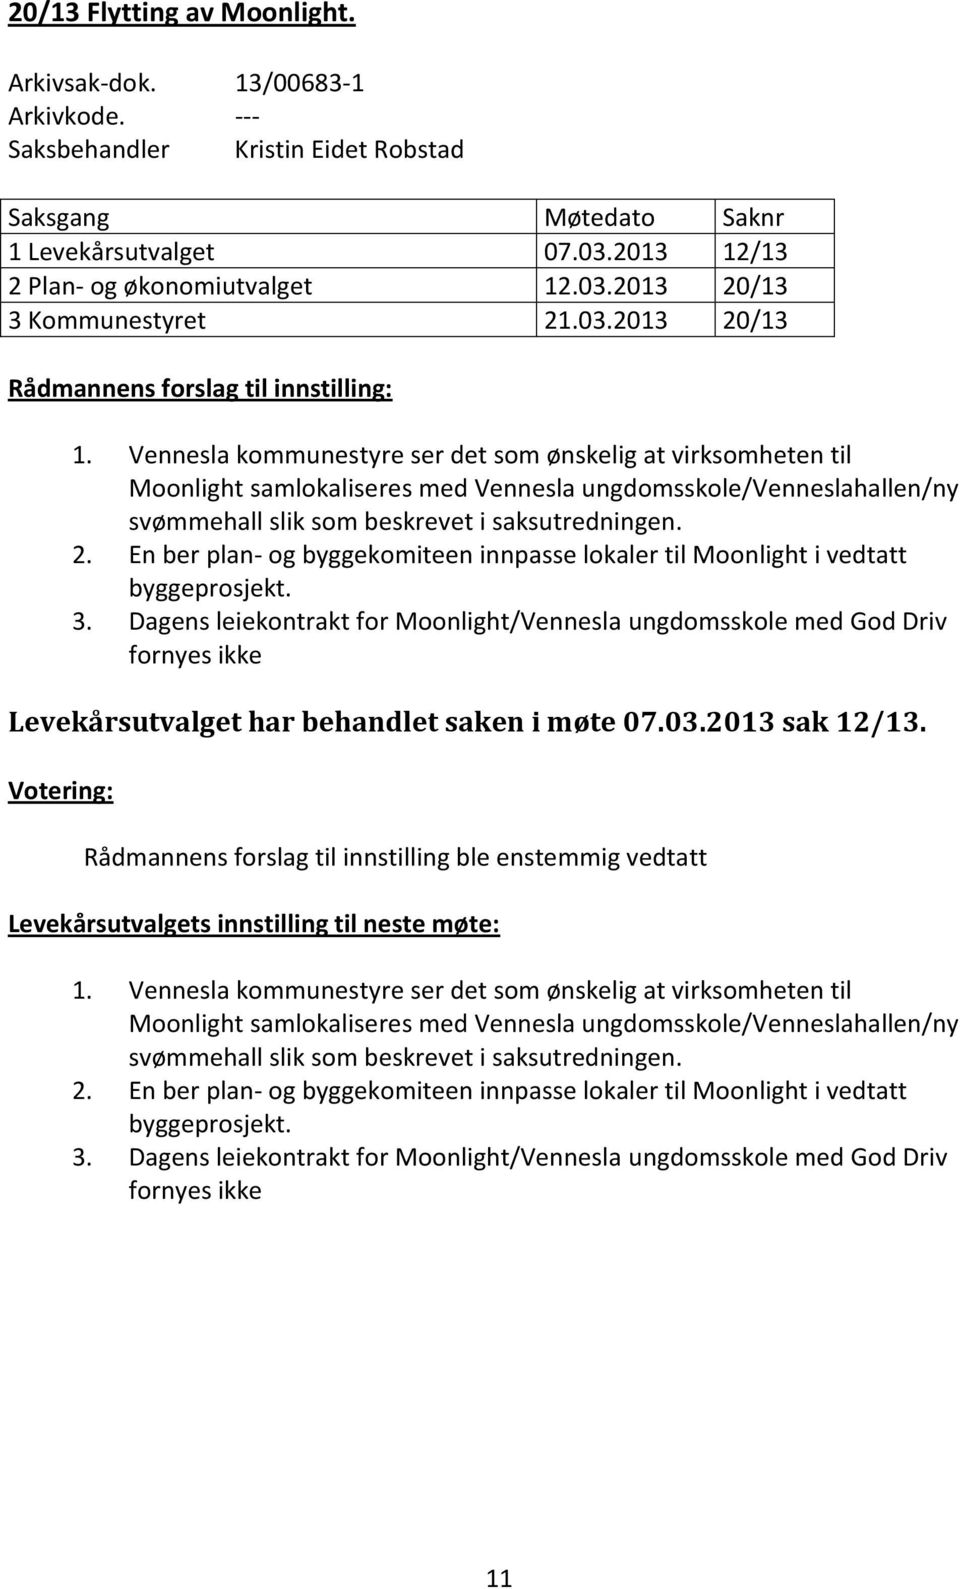 Vennesla kommunestyre ser det som ønskelig at virksomheten til Moonlight samlokaliseres med Vennesla ungdomsskole/venneslahallen/ny svømmehall slik som beskrevet i saksutredningen. 2.